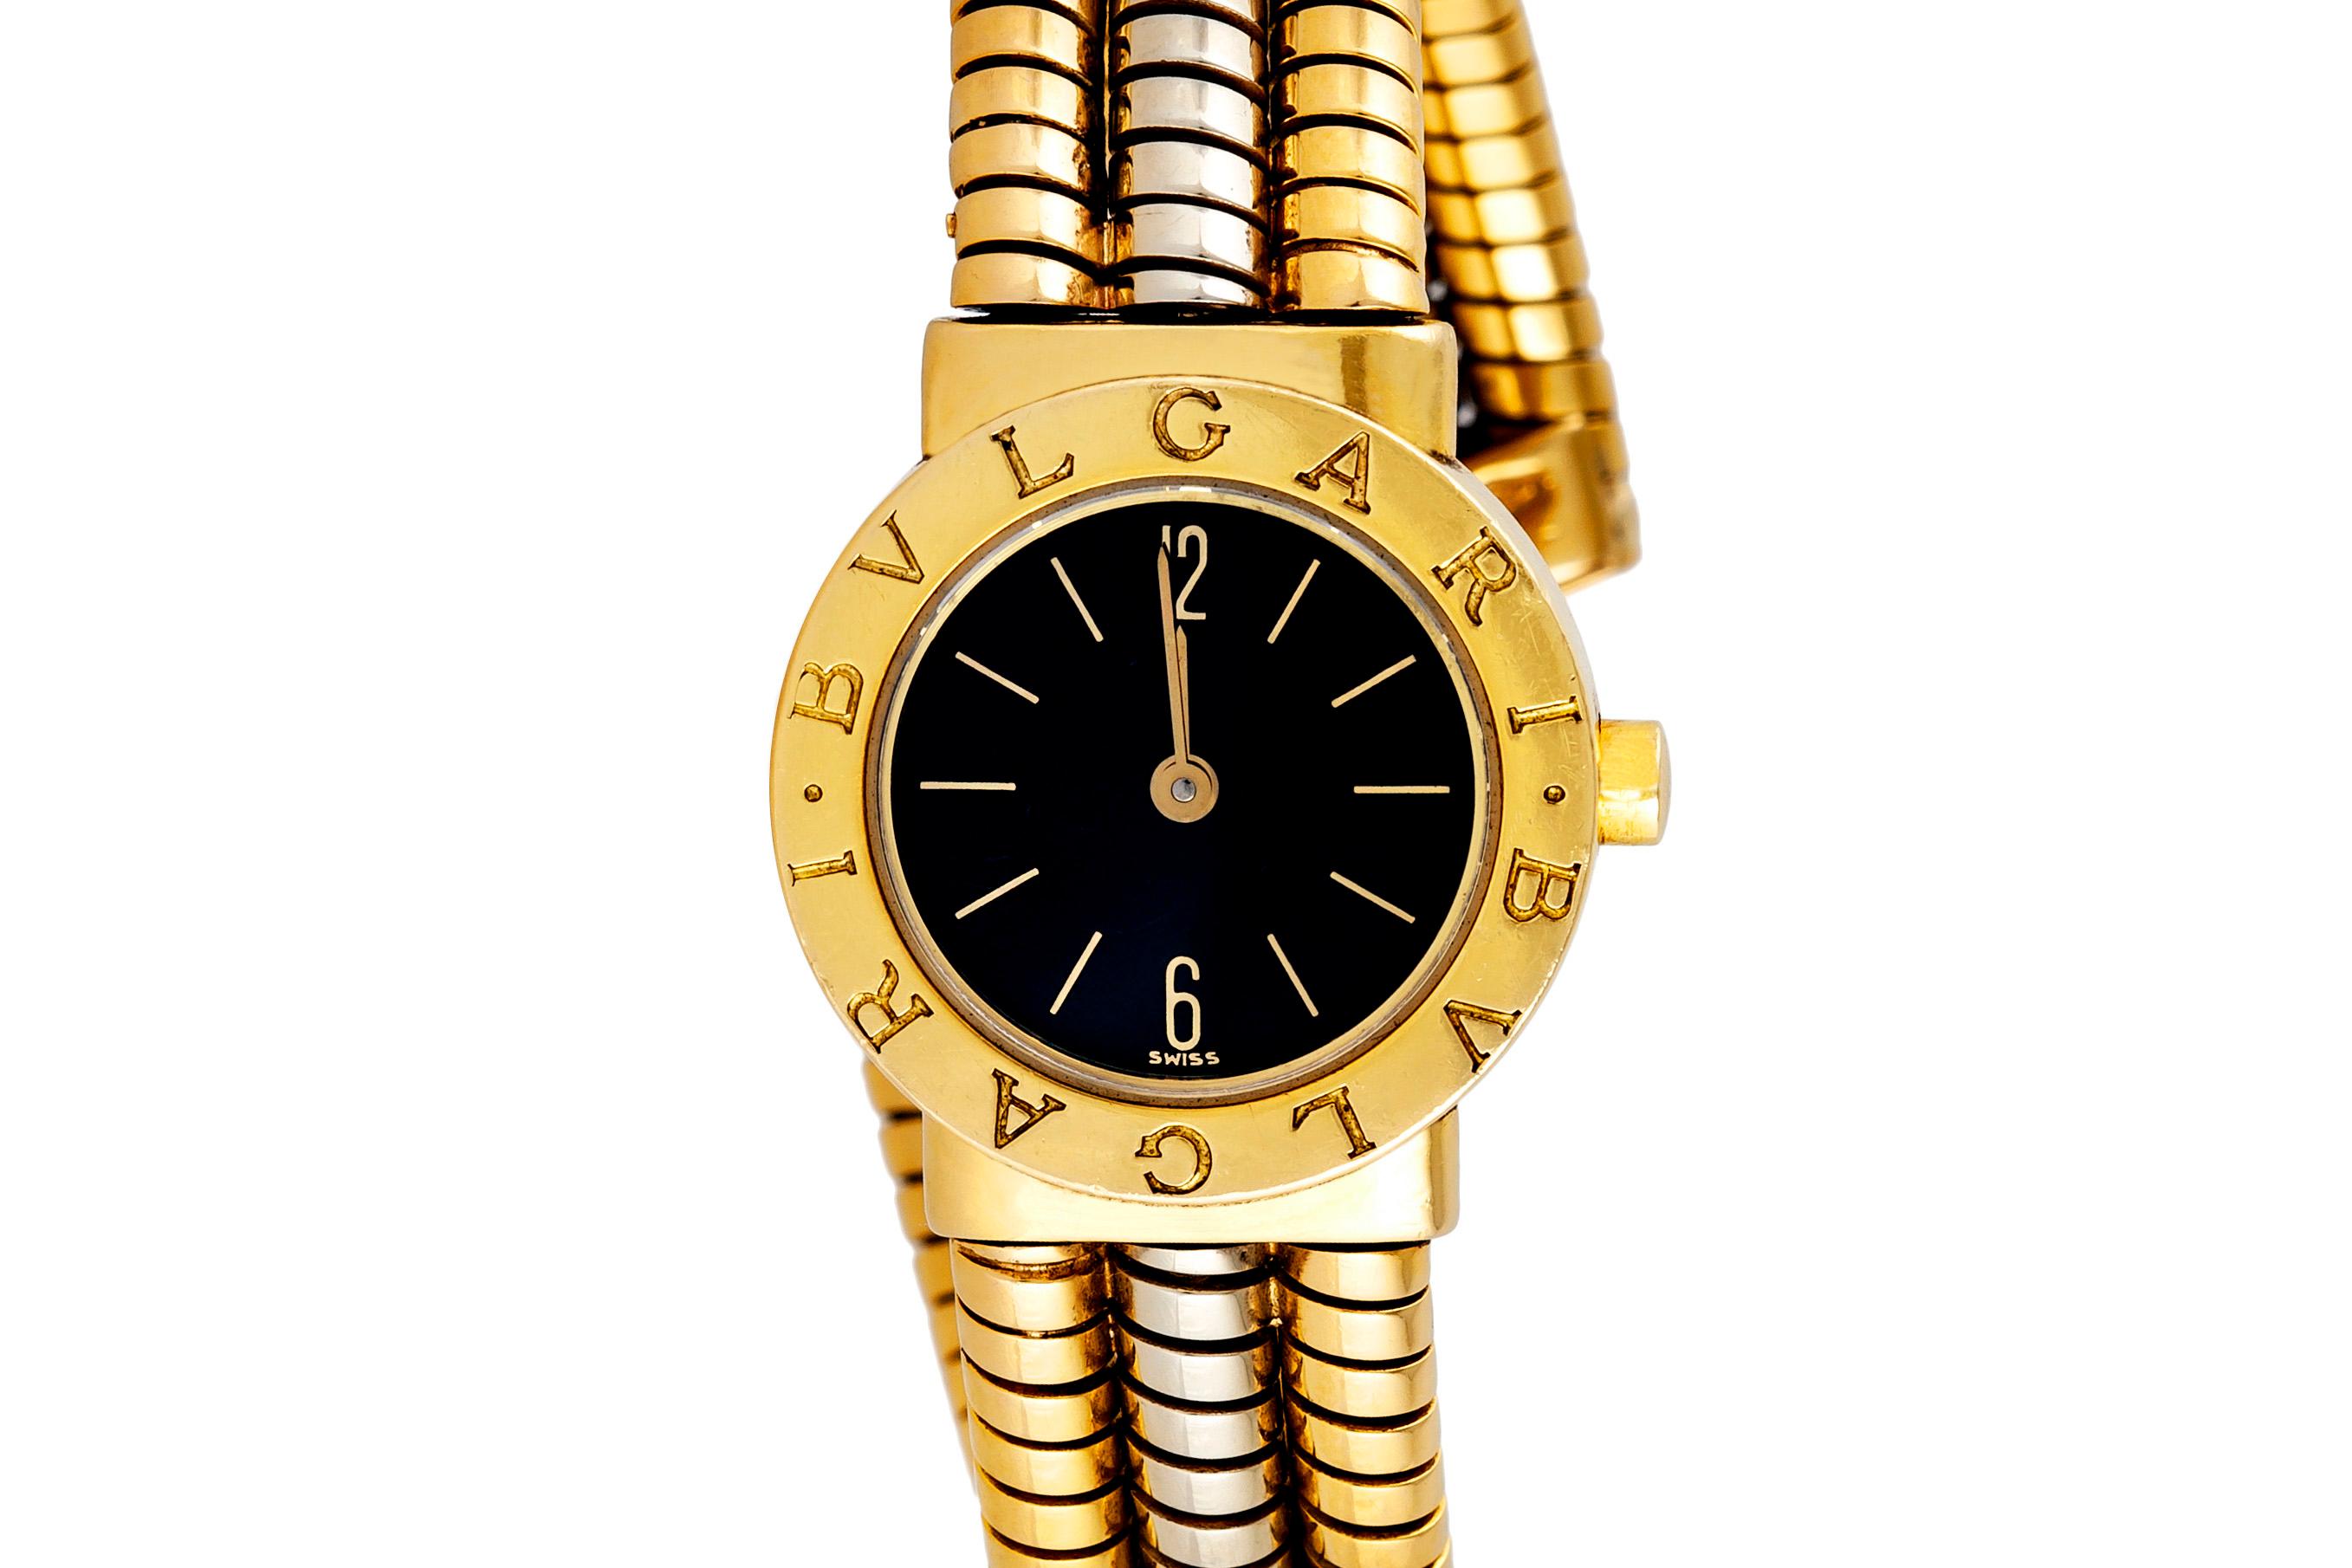 Die Uhr ist fein in 18k Gold gefertigt. Signiert von Bvlgari. Nr. BB232T-F2637.